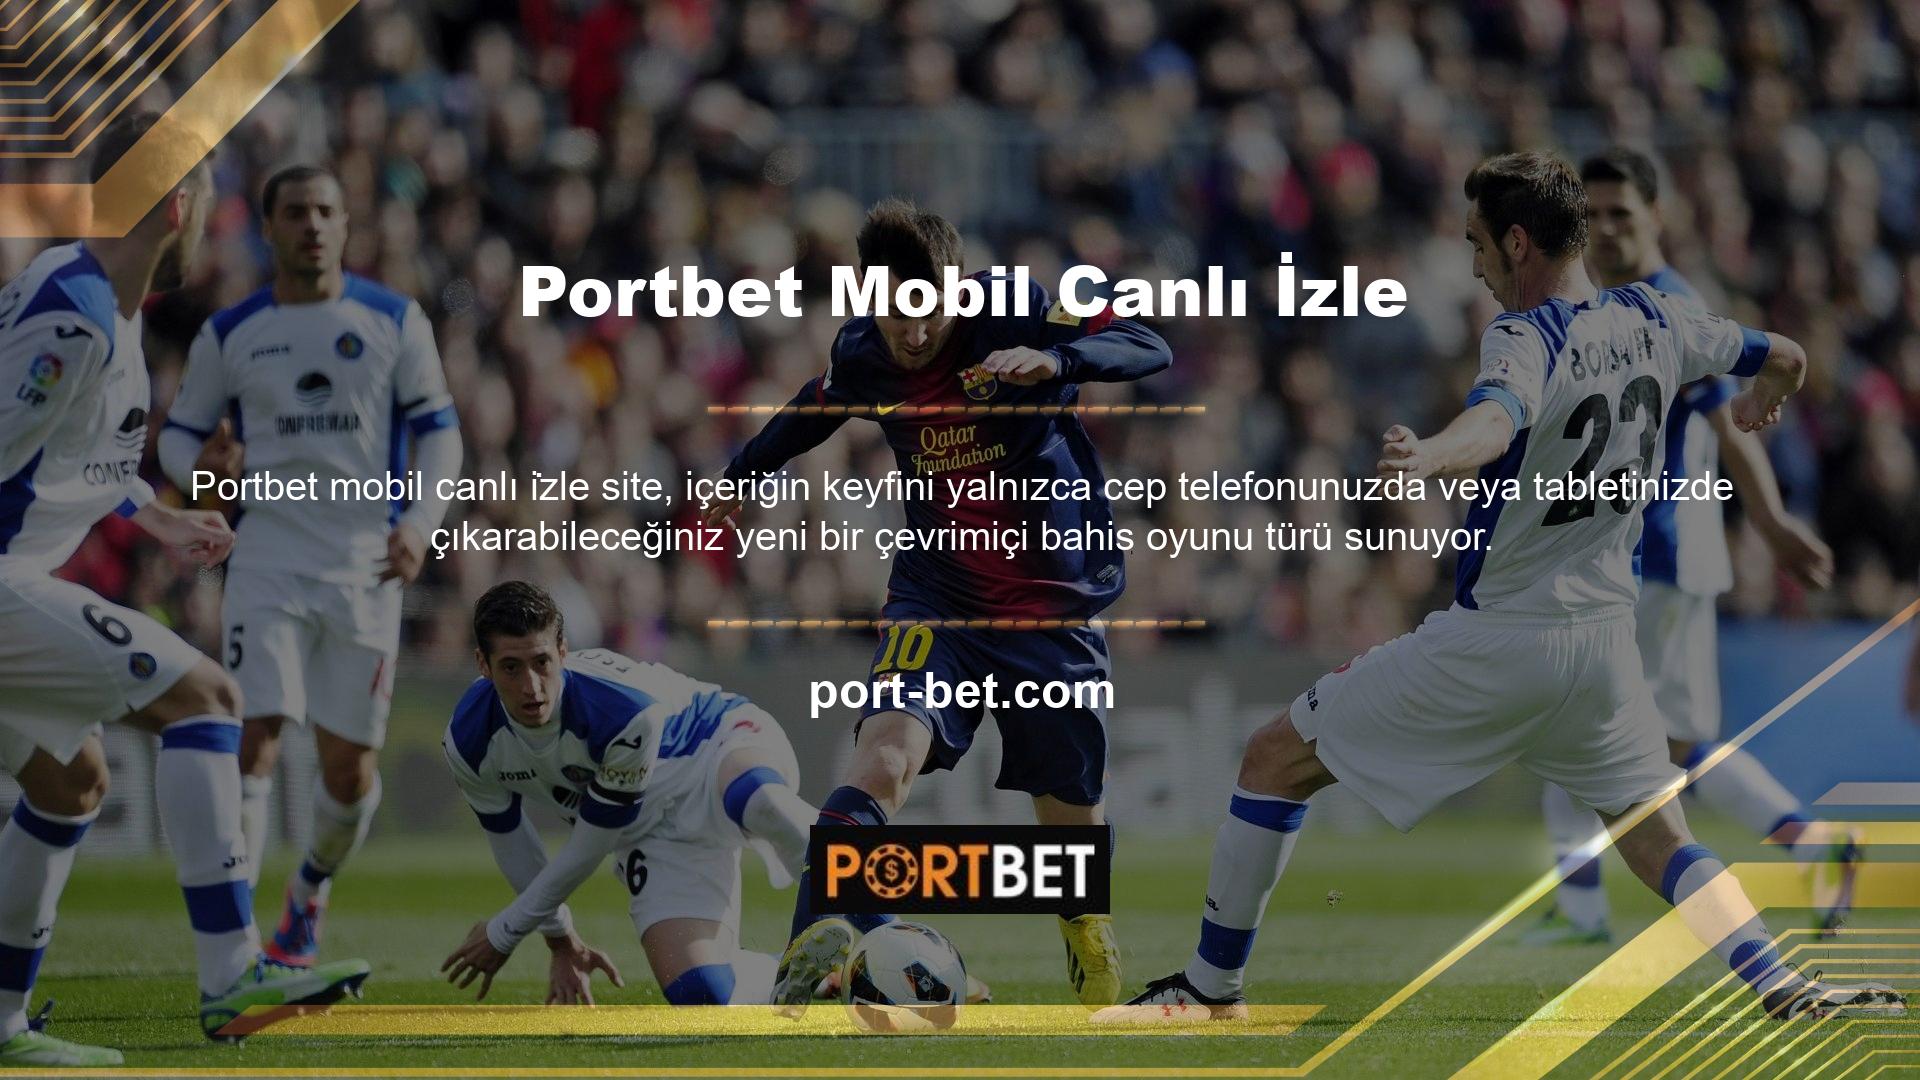 Portbet Bet Mobil Canlı İzle çevrimiçi bahis sitesi aynı zamanda yeni canlı spor bahislerine kaydolmanıza ve telefonunuzdan veya tabletinizden özel olarak oyun oynamanıza da olanak tanır